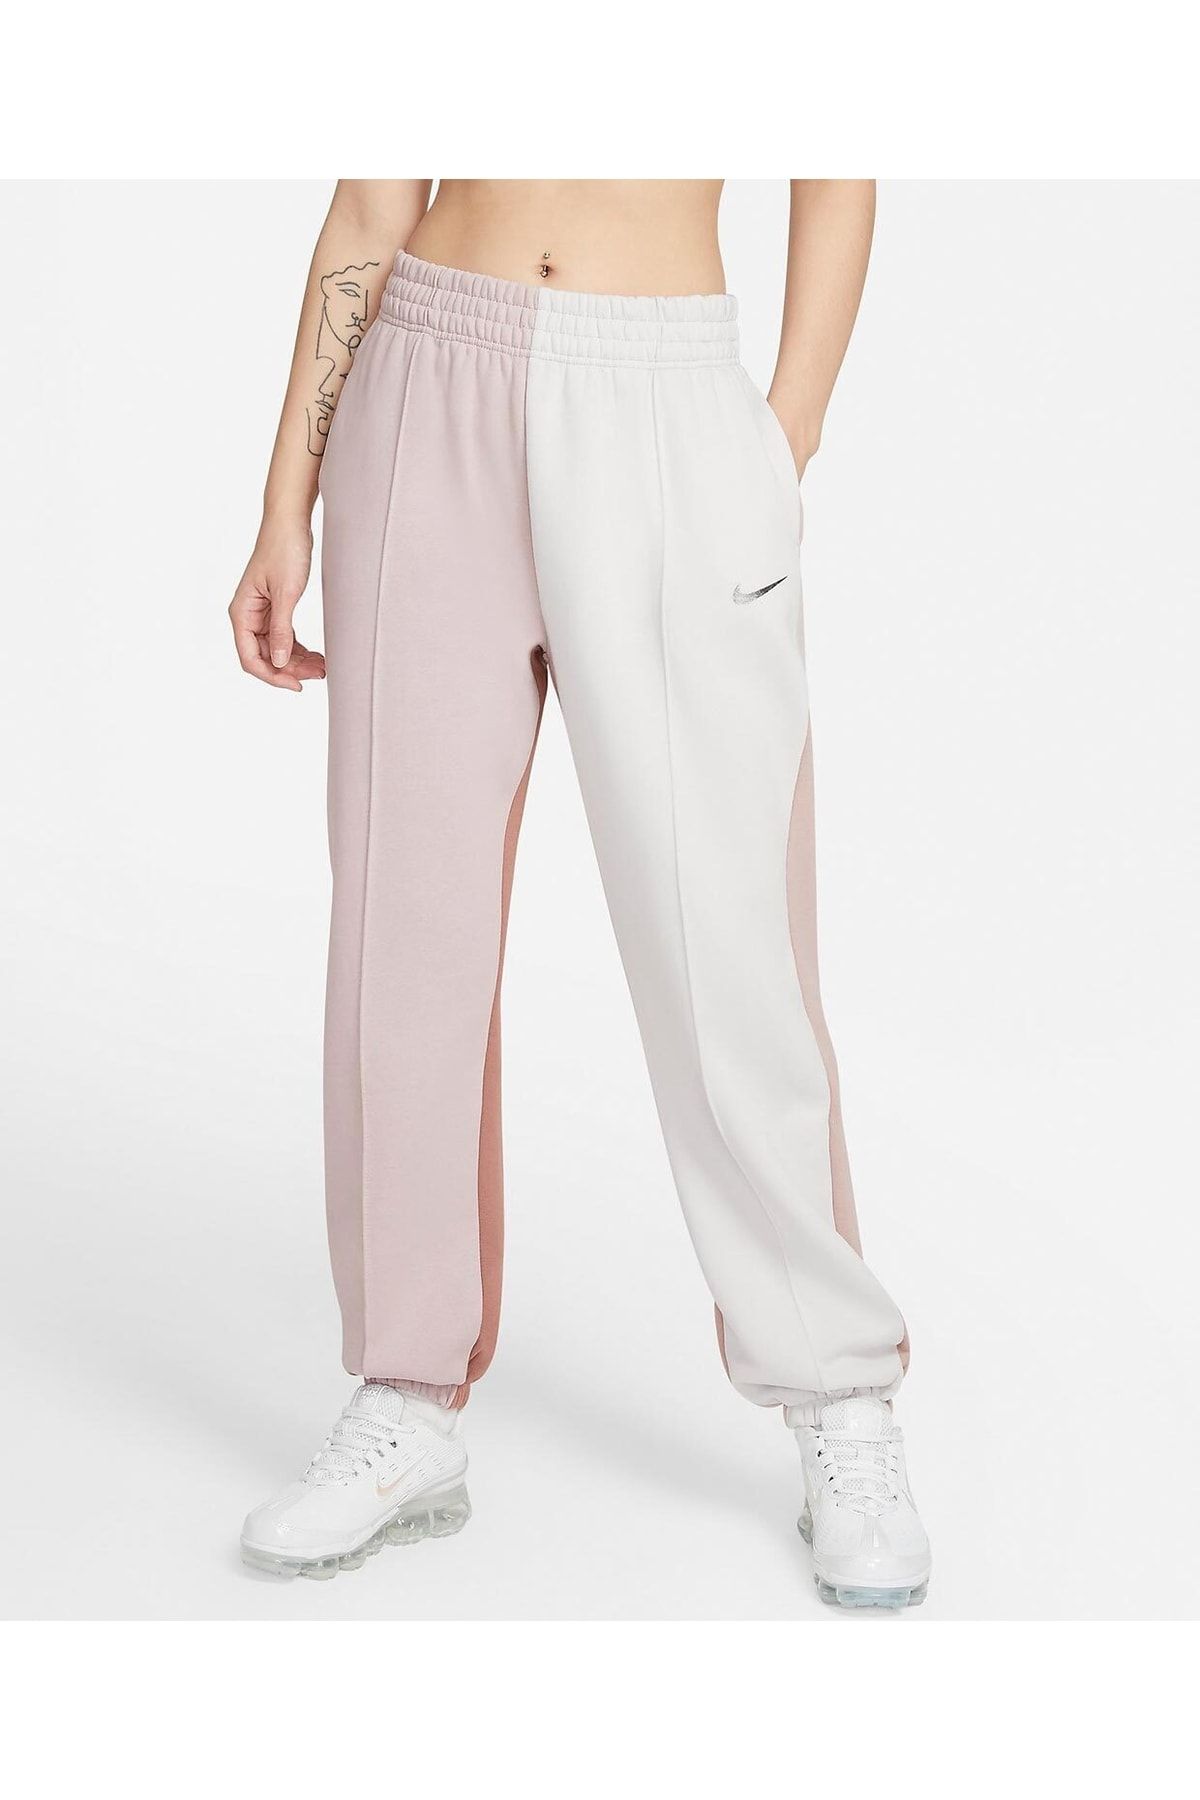 Nike Sportswear Club Fleece Women's Casual Style Sweatpants DQ5191-894 -  Trendyol